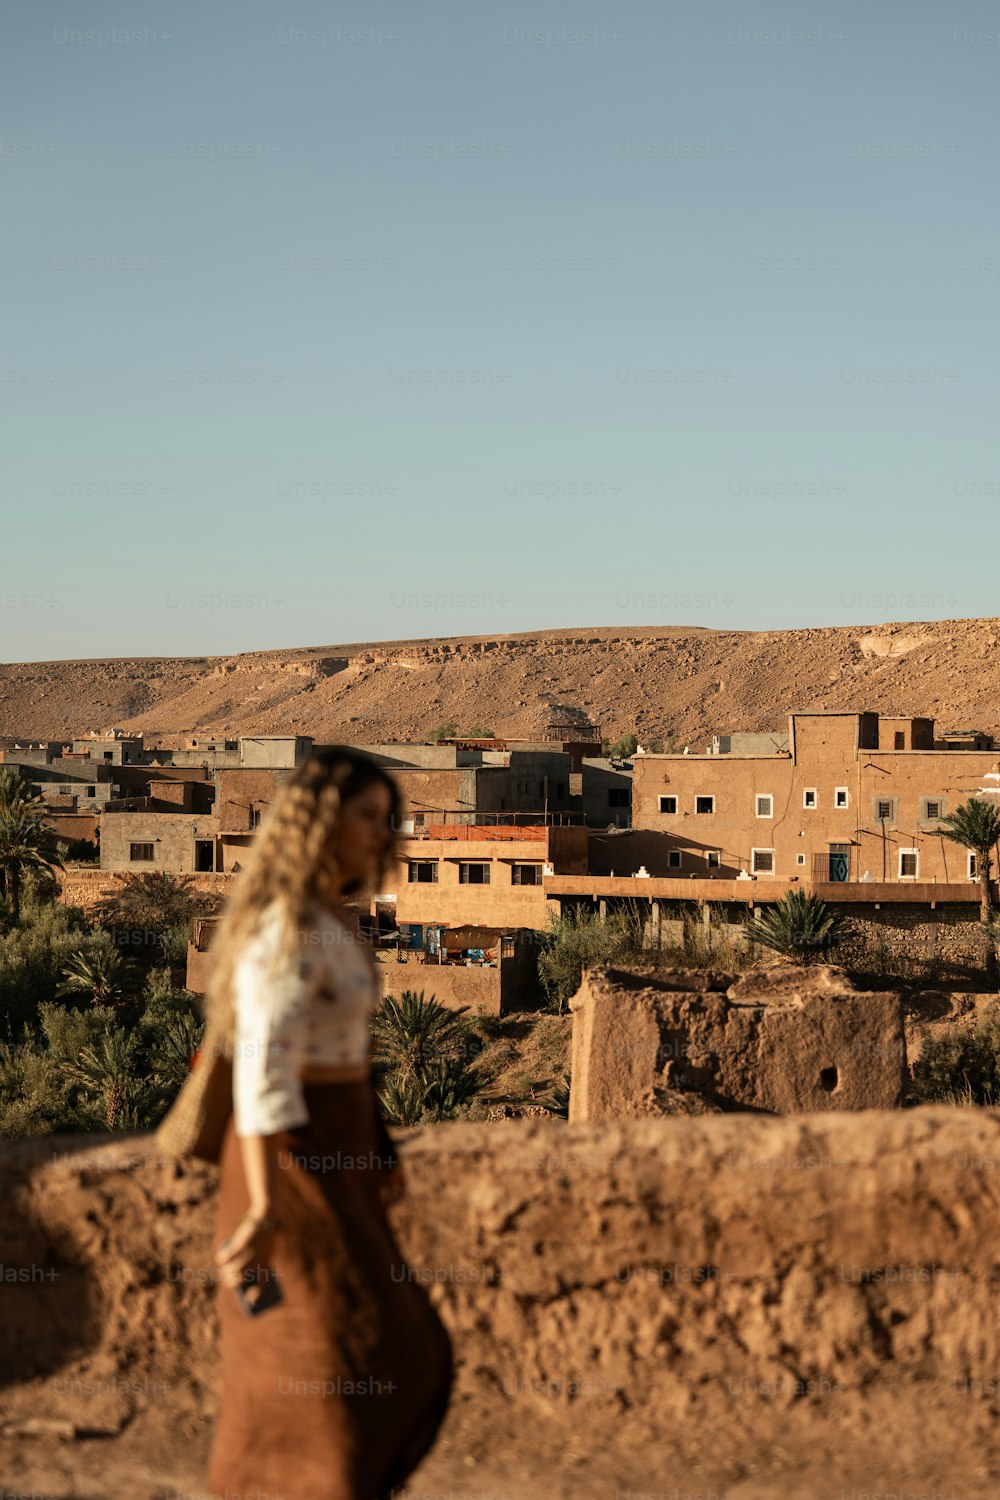 Eine Frau, die einen Feldweg neben einer Wüstenstadt entlanggeht